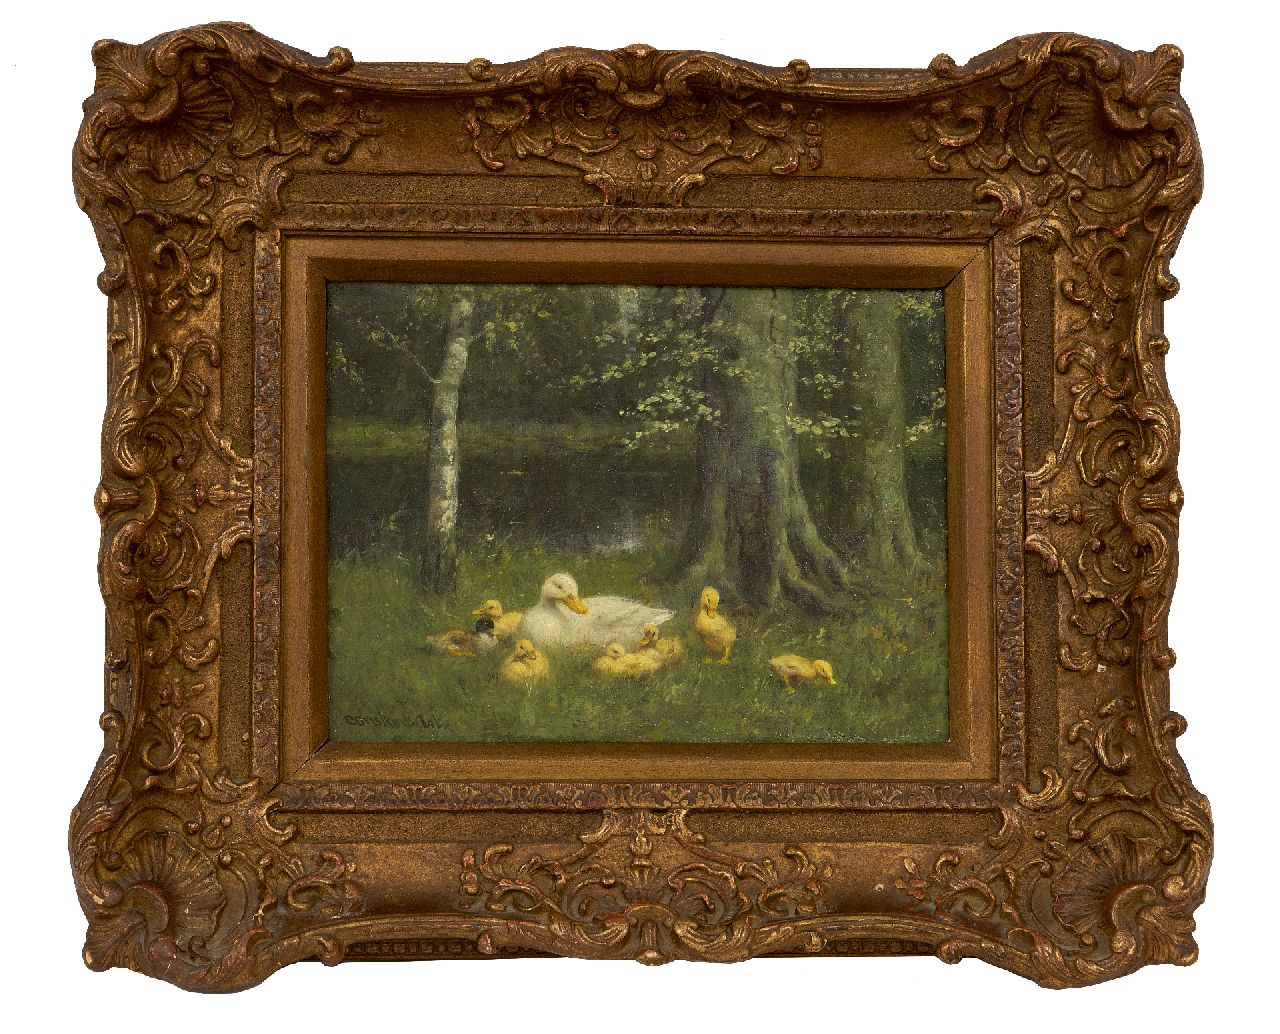 Artz C.D.L.  | 'Constant' David Ludovic Artz | Schilderijen te koop aangeboden | Eendenfamilie bij een bosven, olieverf op doek 18,6 x 24,3 cm, gesigneerd linksonder